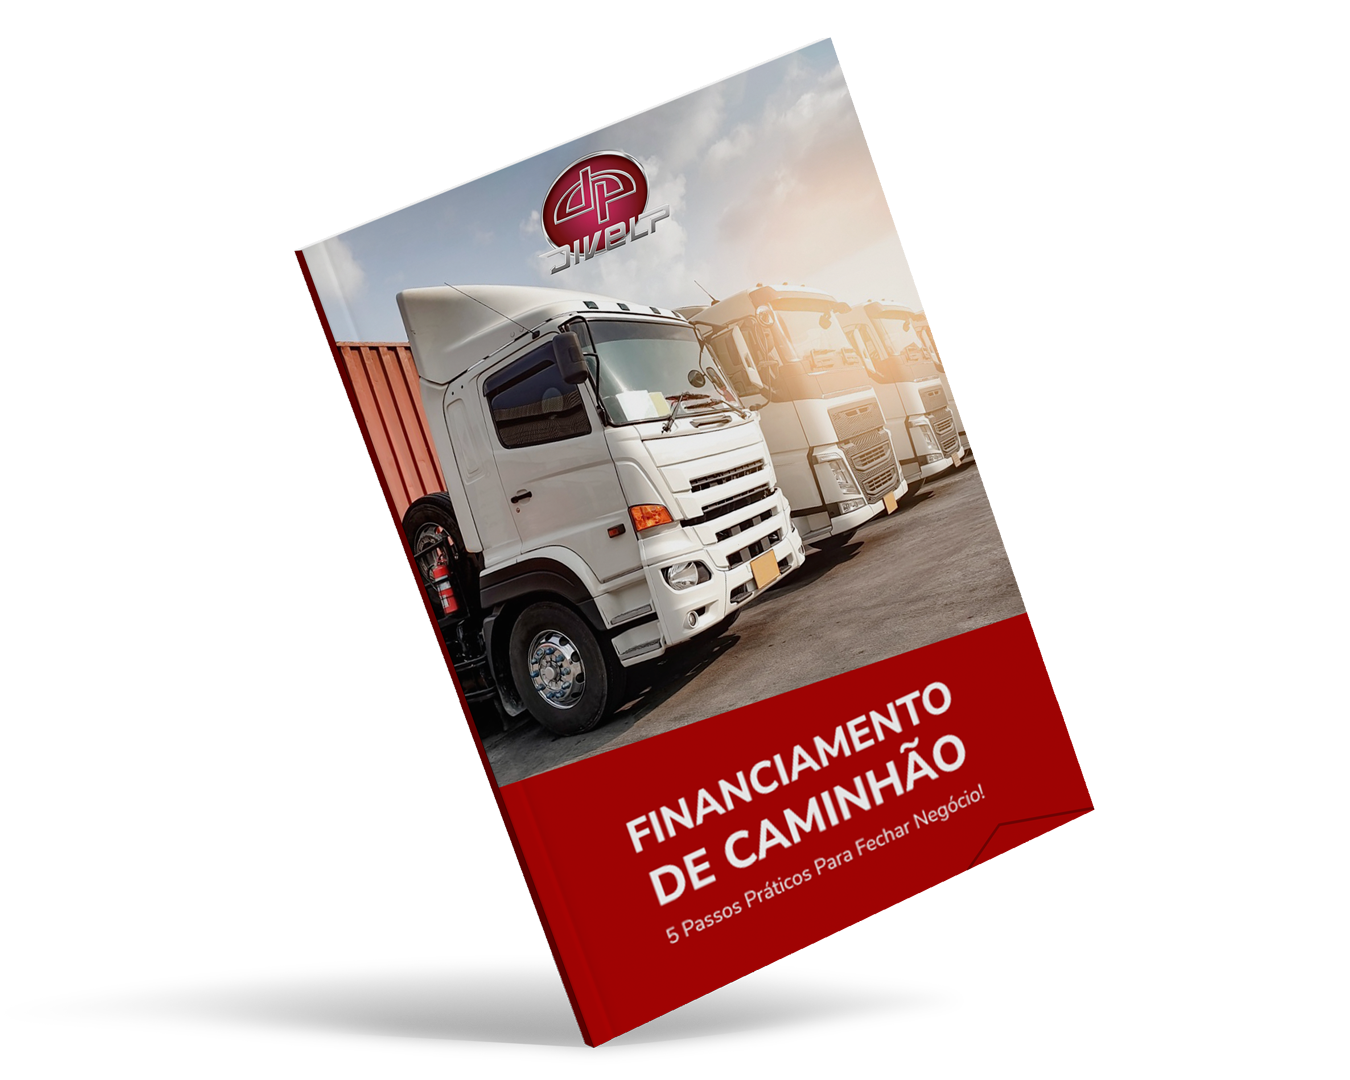 E-book Financiamento de caminhão: 5 passos práticos para fechar negócio